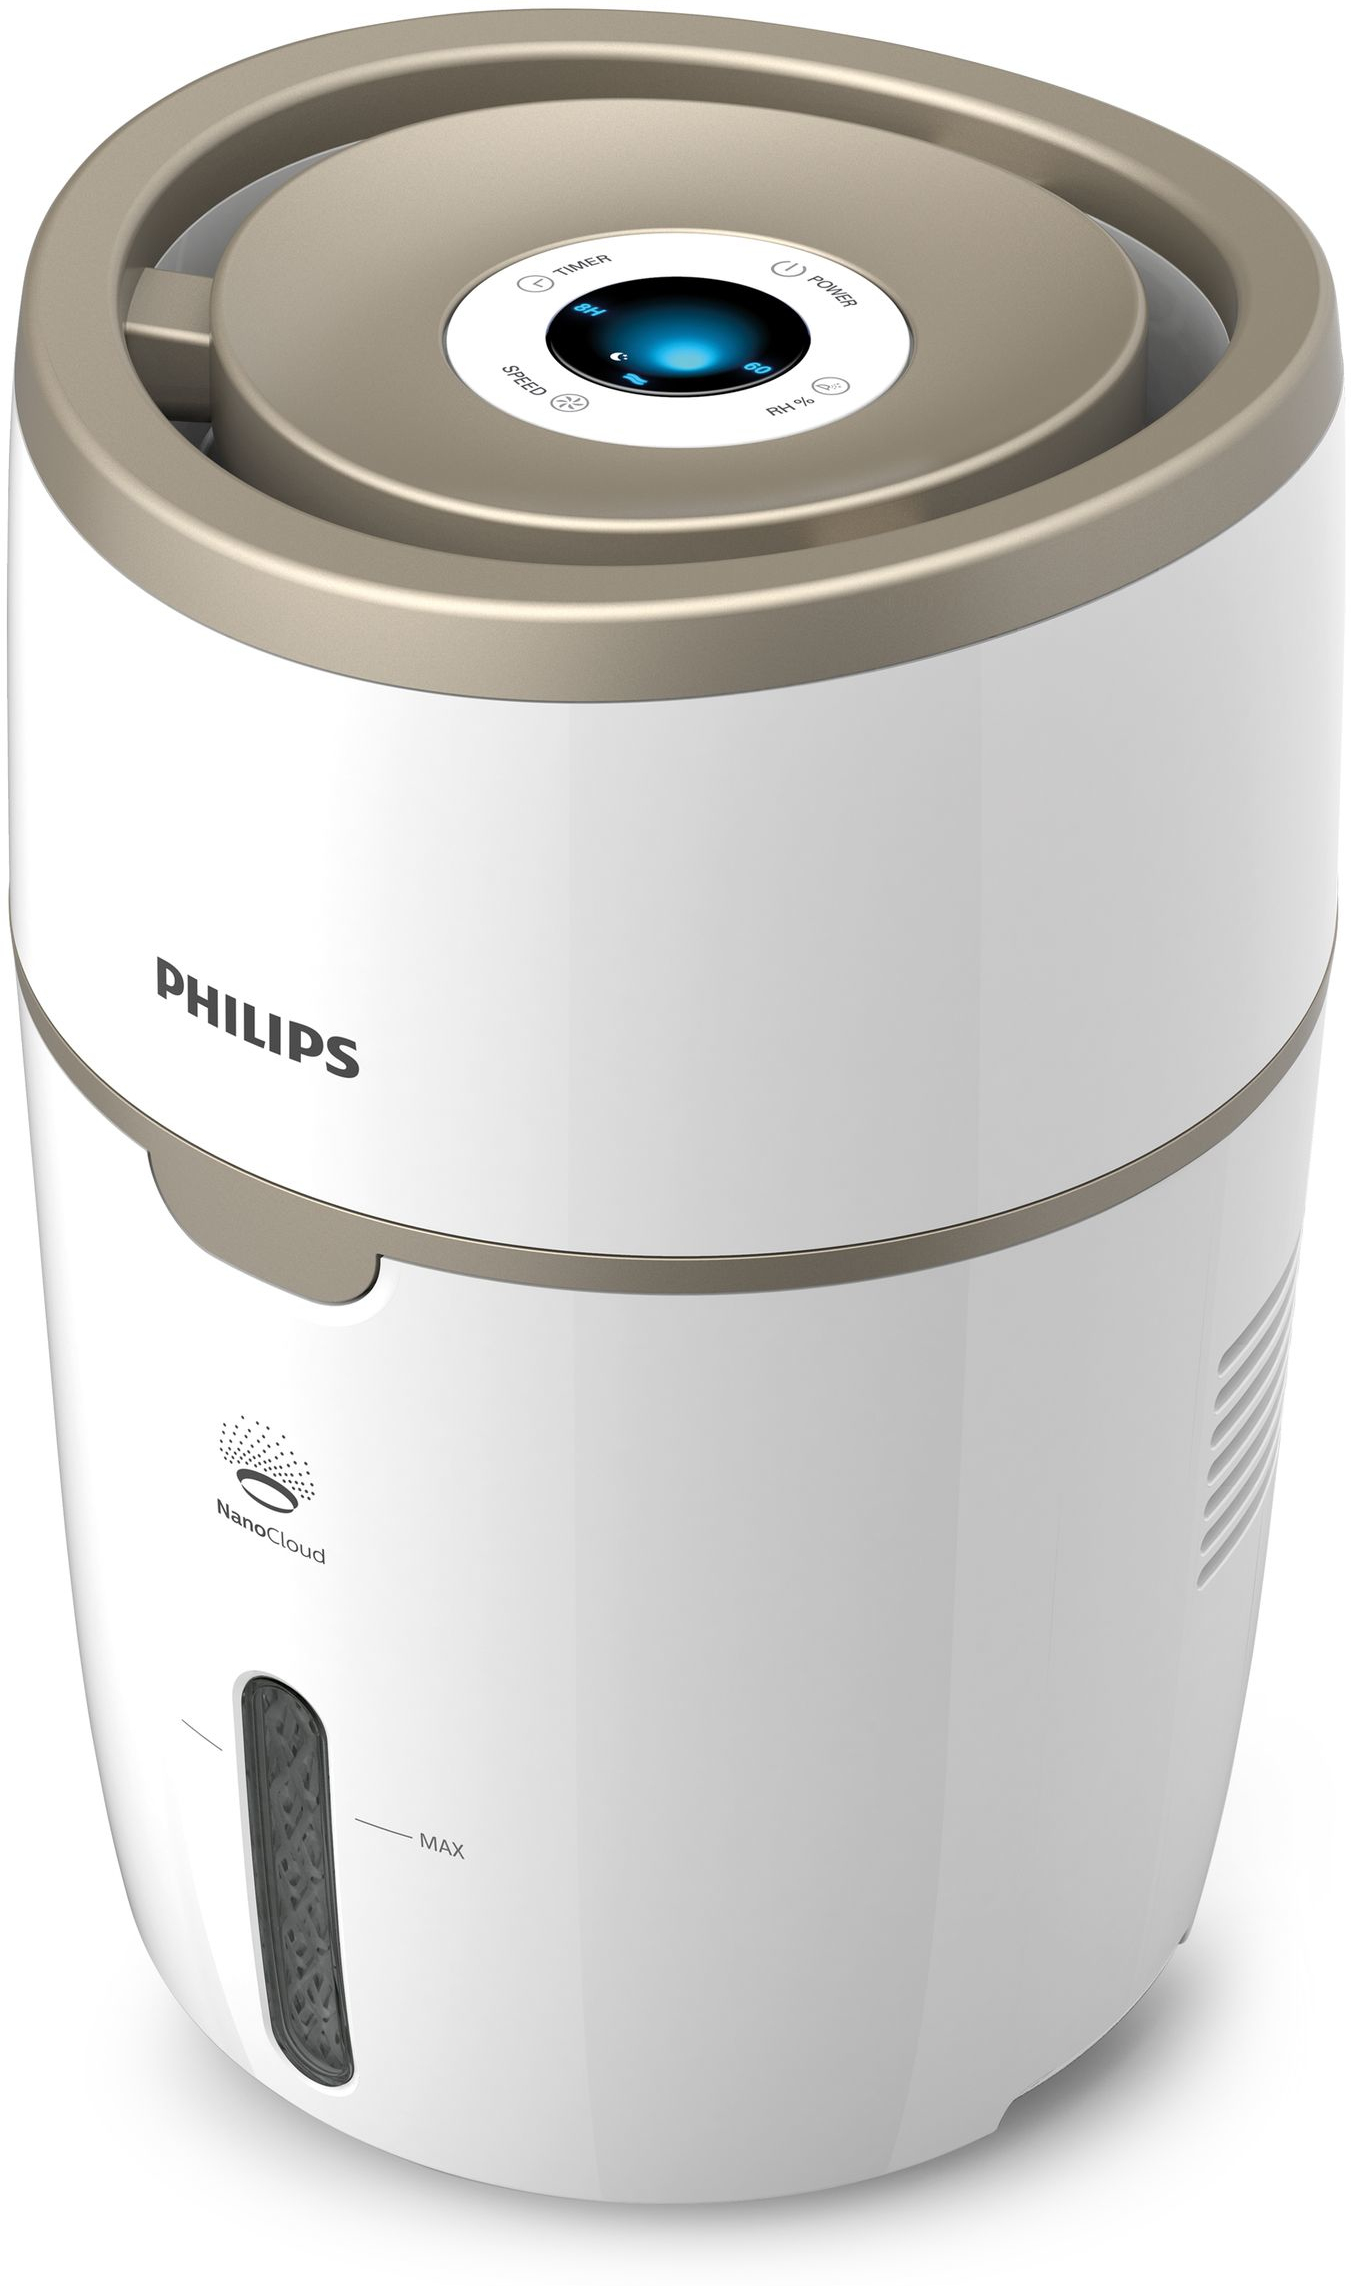 Philips Serie 2000 humidificador de aire ambientador 44m² nanocloud 2 velocidades modo sueño tanque 4l hu481610 4